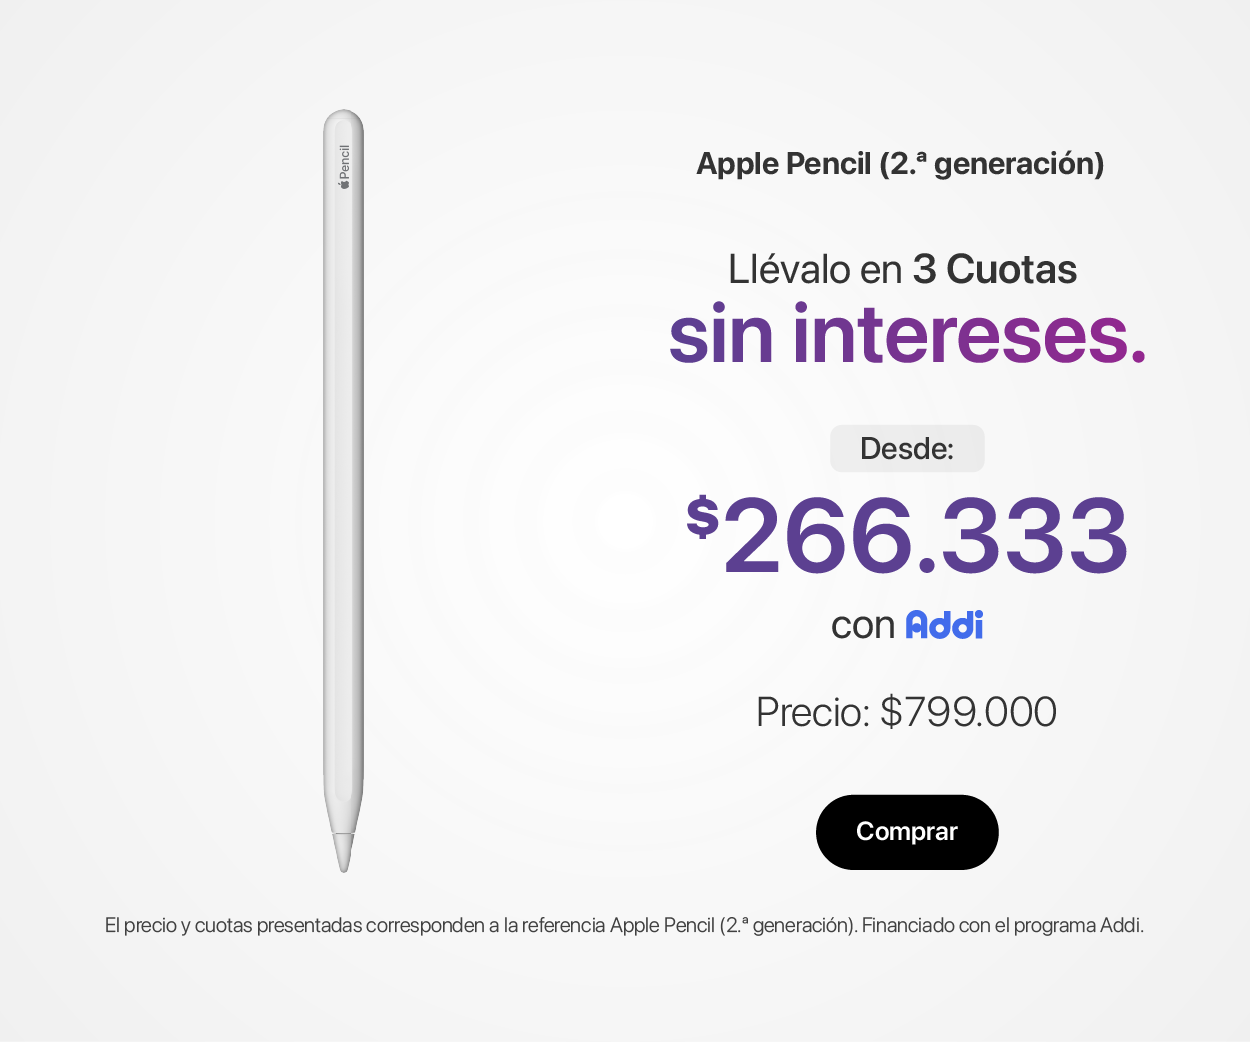 Compra el Apple Pencil 2 sin intereses con ADDI | Mac Center Colombia